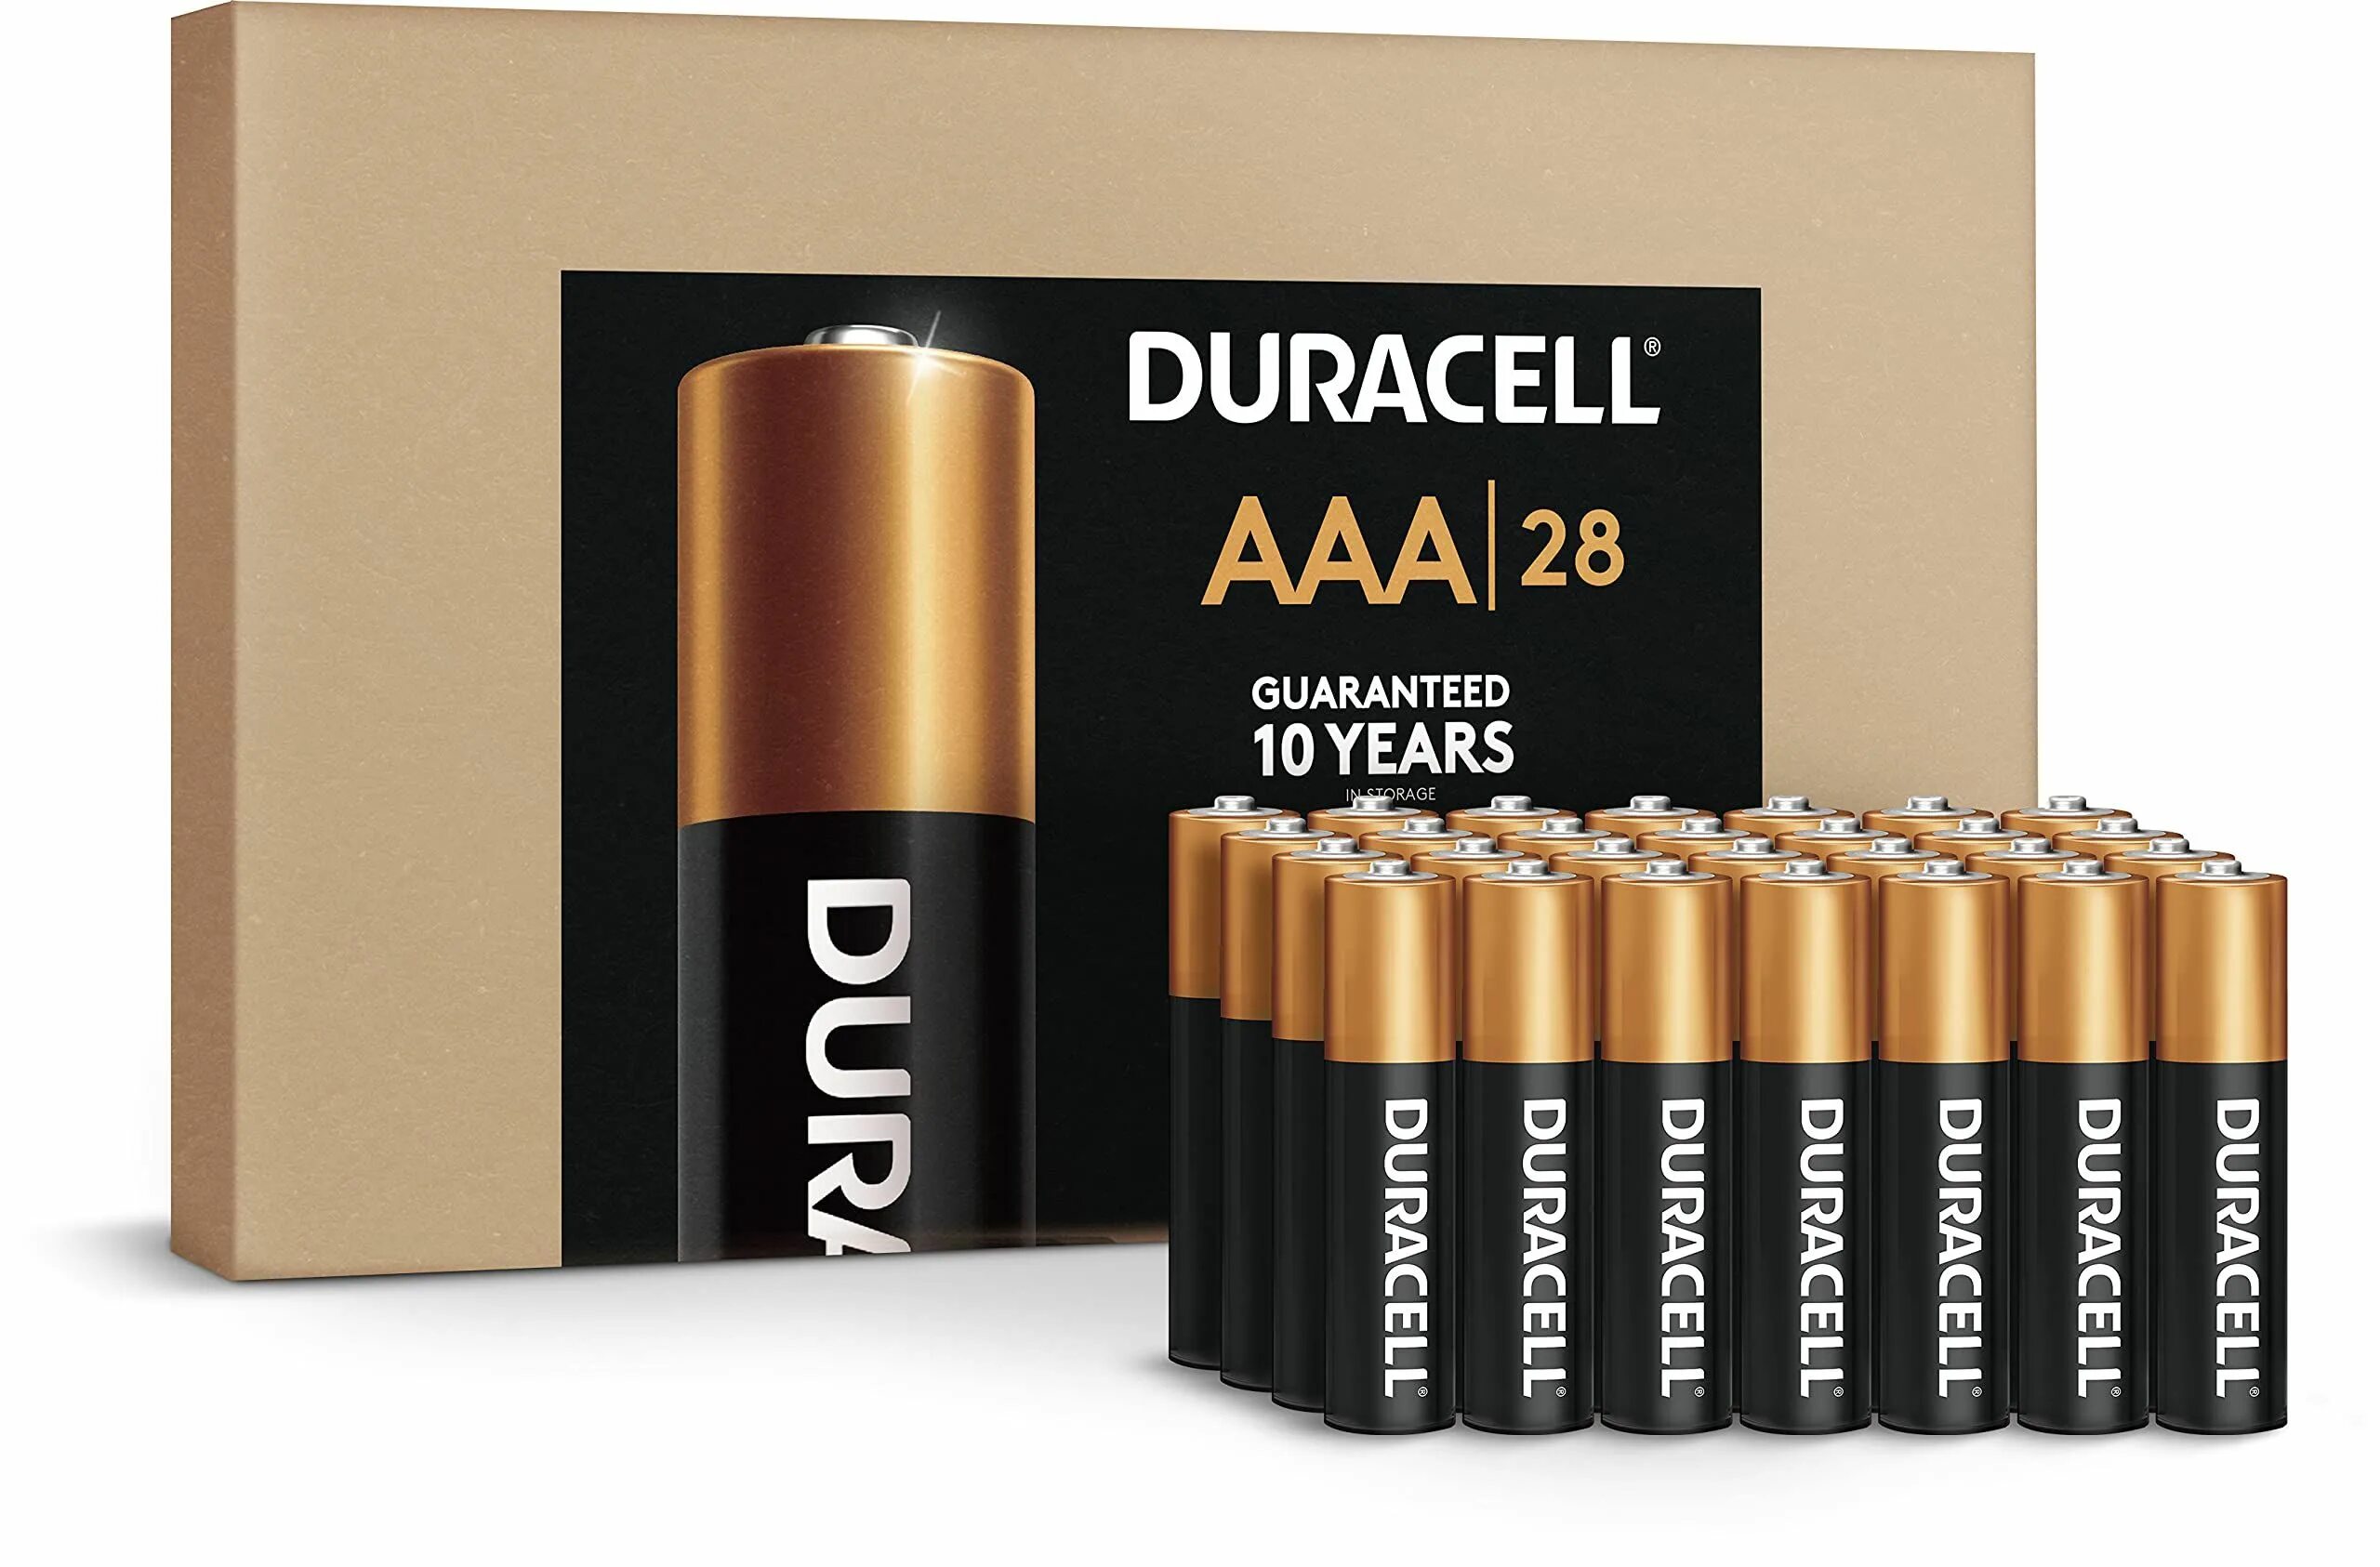 Aaa battery. 2 Батарейки ААА. Батарейка Дюрасел ААА. Duracell 1600274. Батарейки Дюрасел пальчиковые.